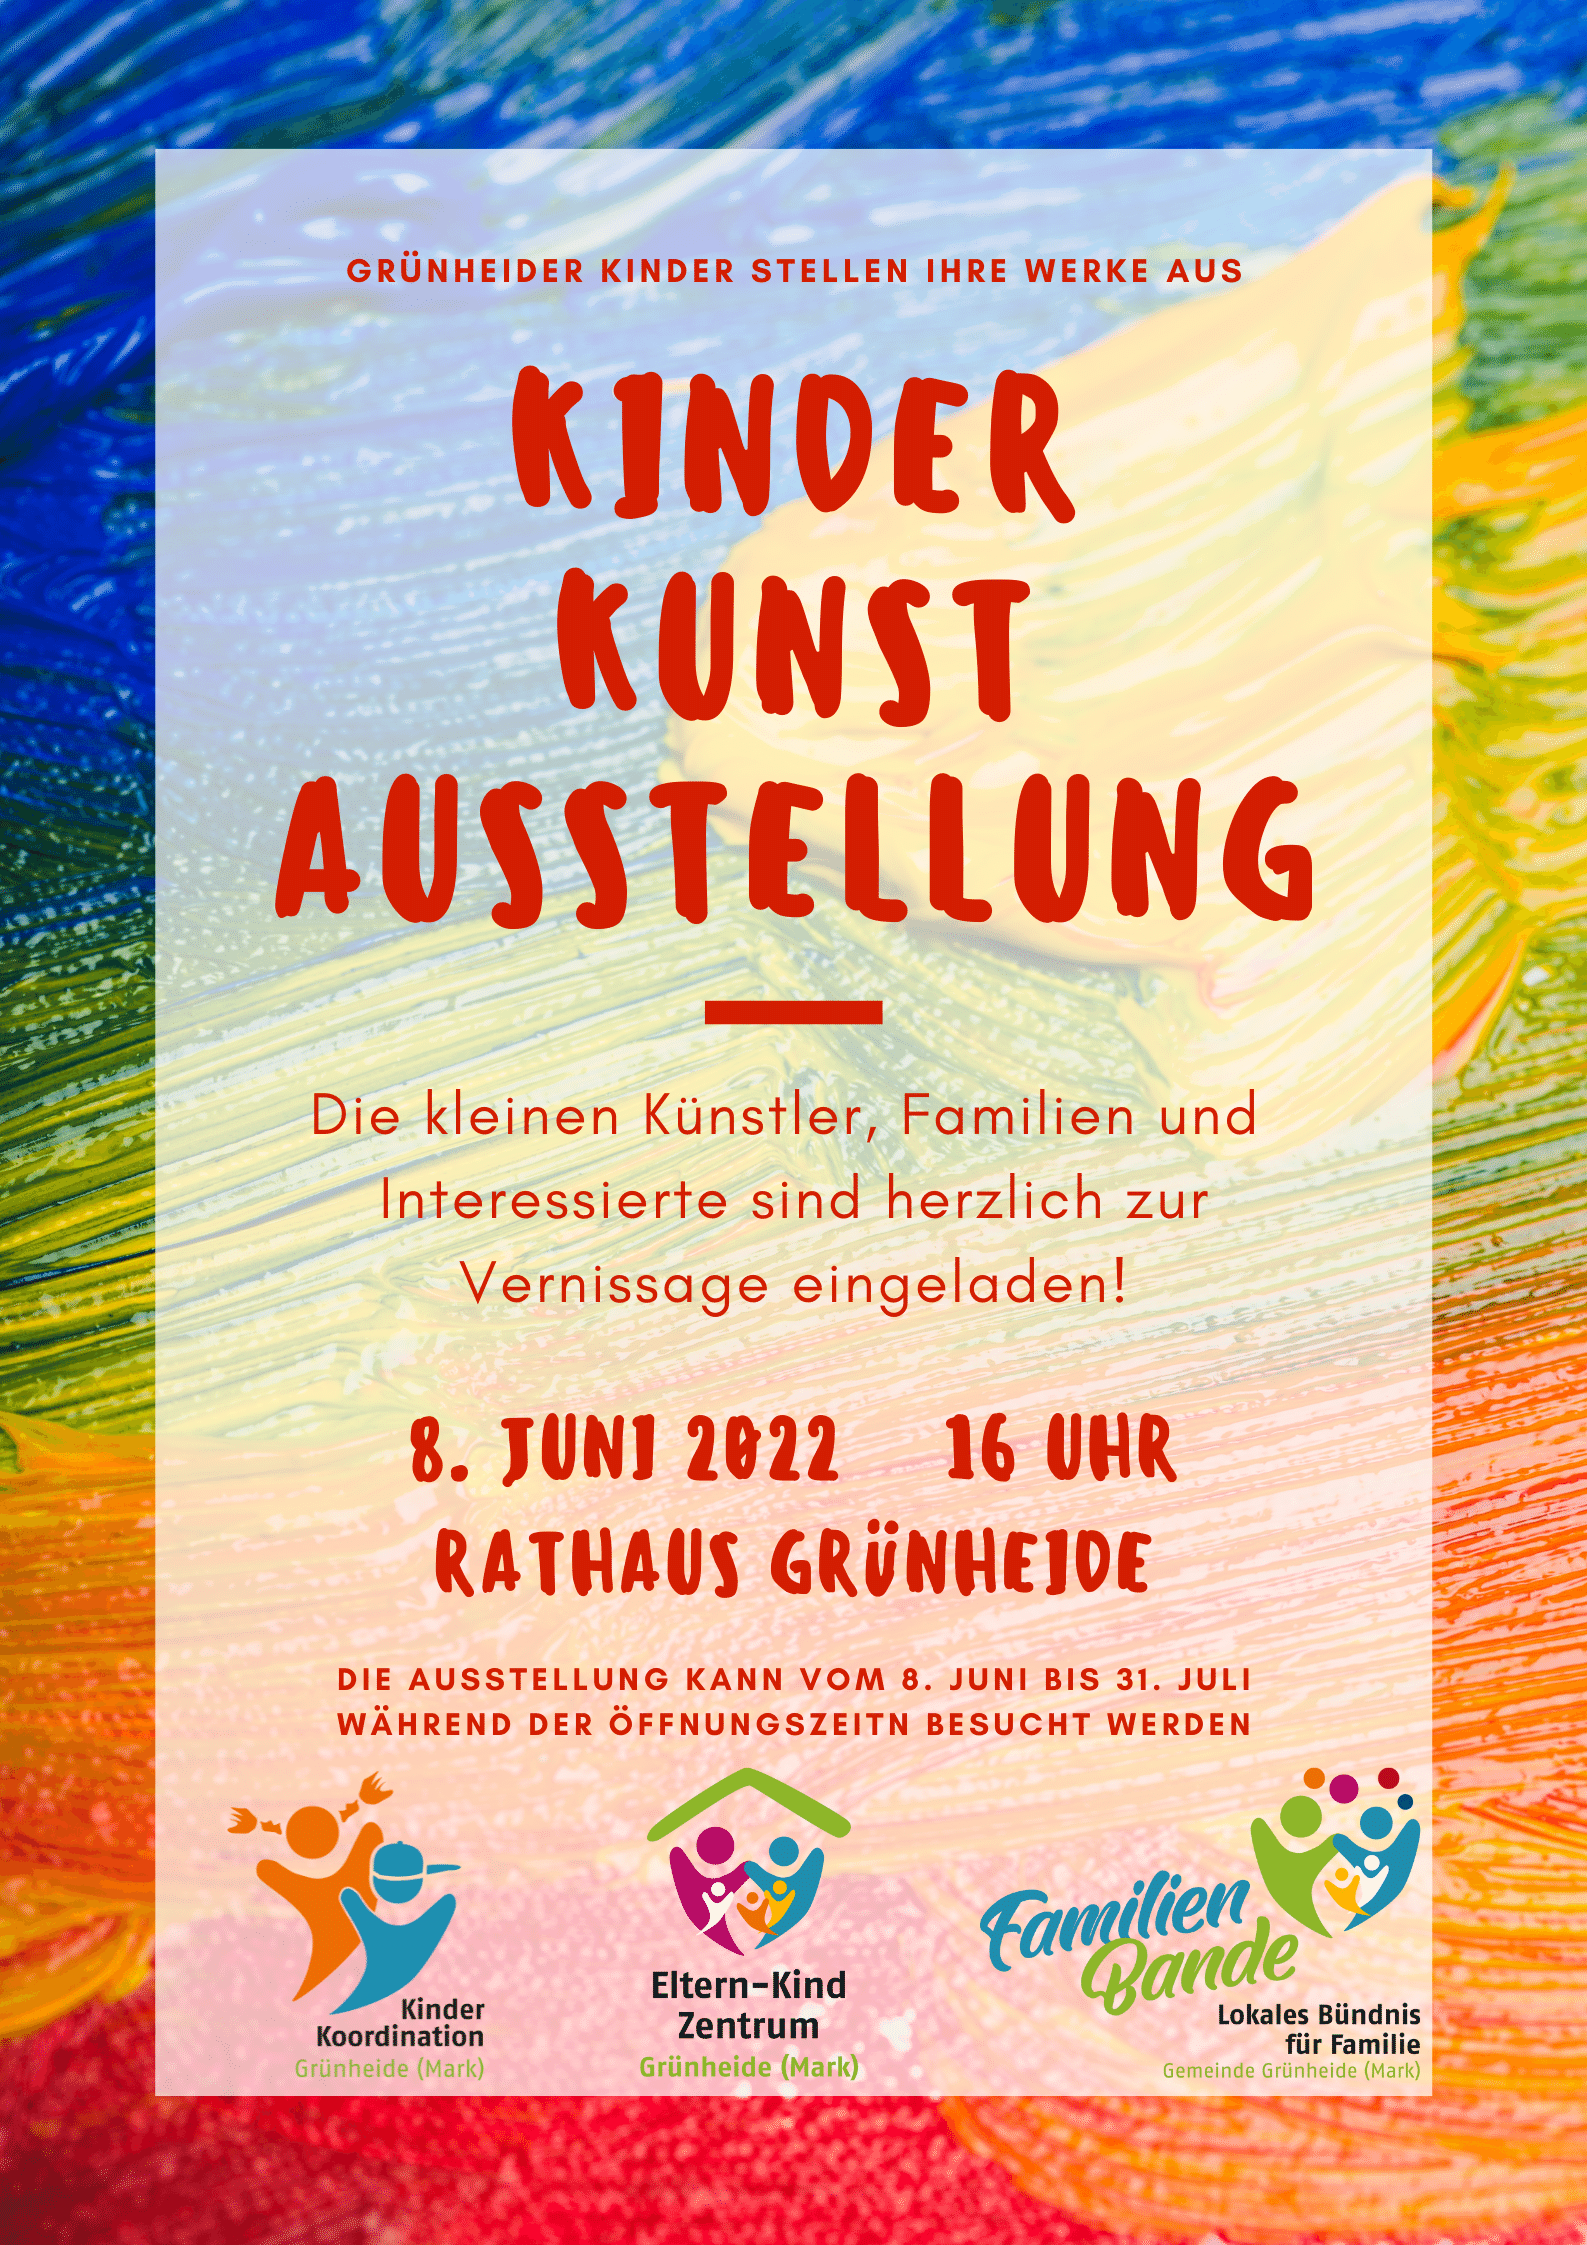 Eröffnung der Kinder-Kunst-Ausstellung im Rathaus Grünheide